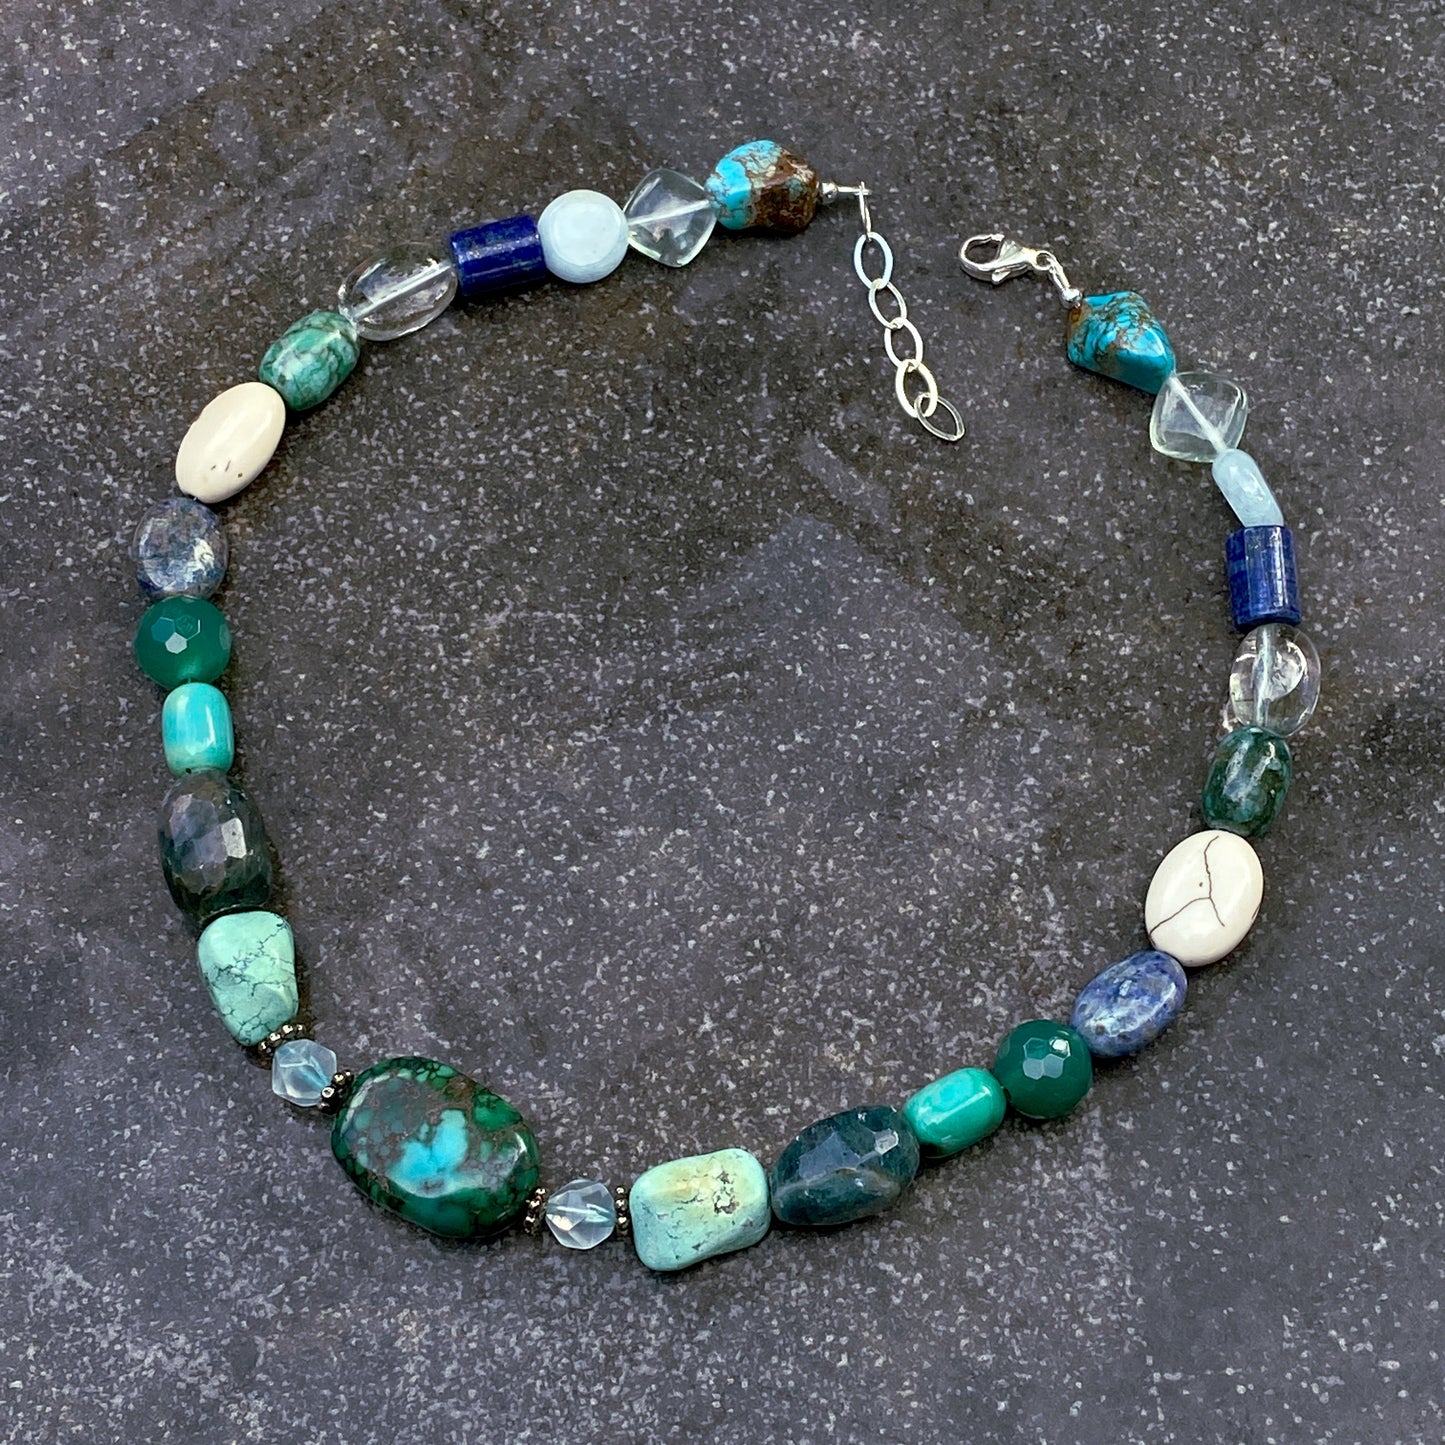 Turquoise, Topaz, Aquamarine, Flourite Gemstone chunky beaded Necklace